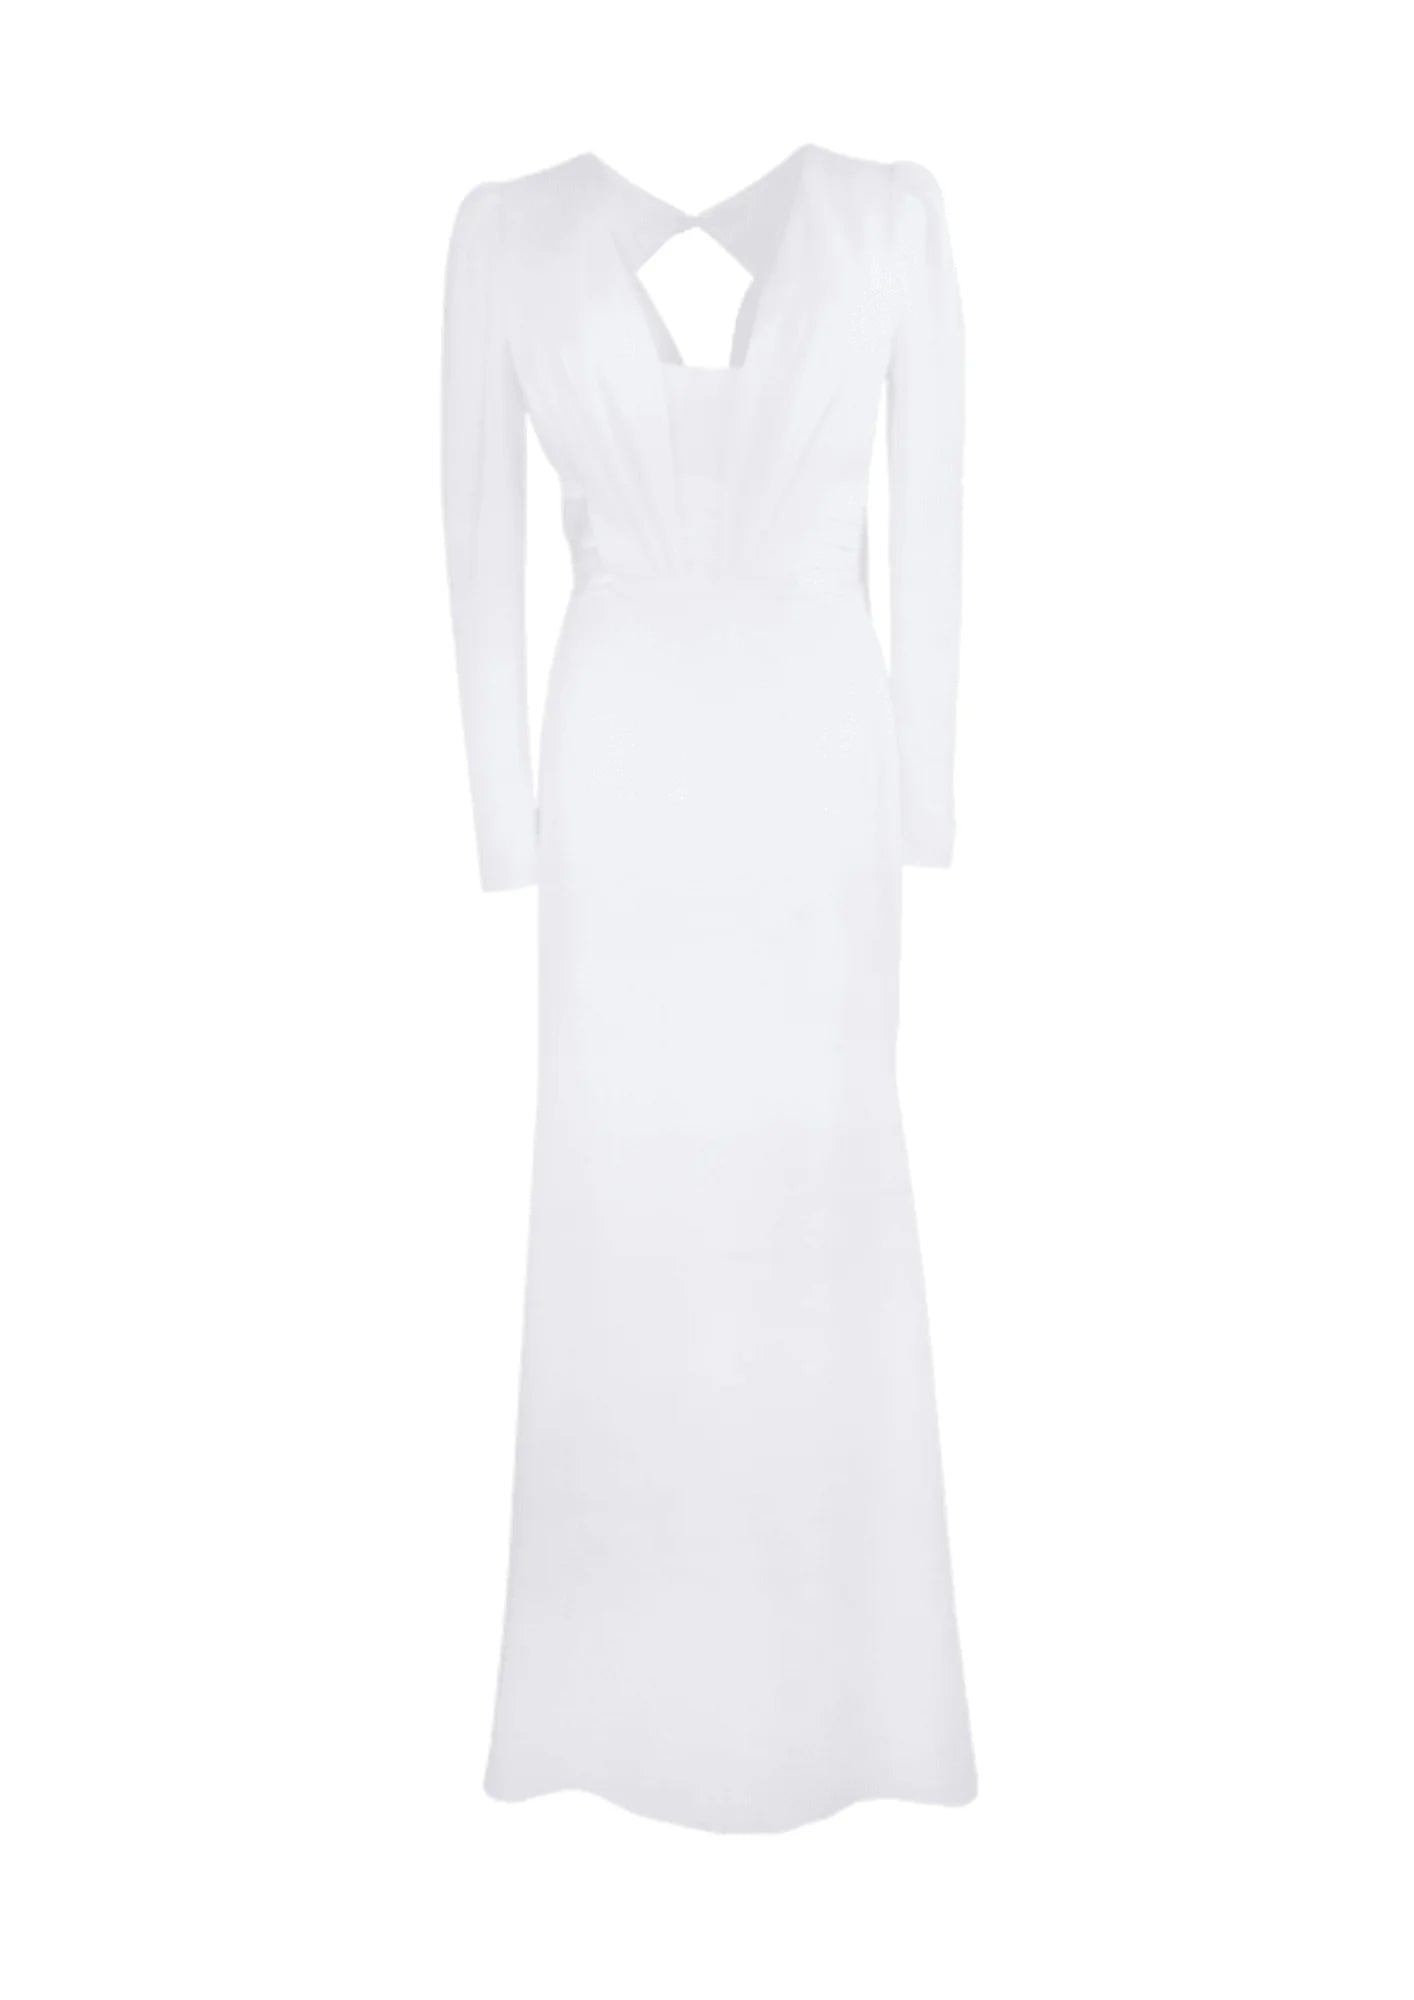 Langarmes weißes Hochzeitskleid